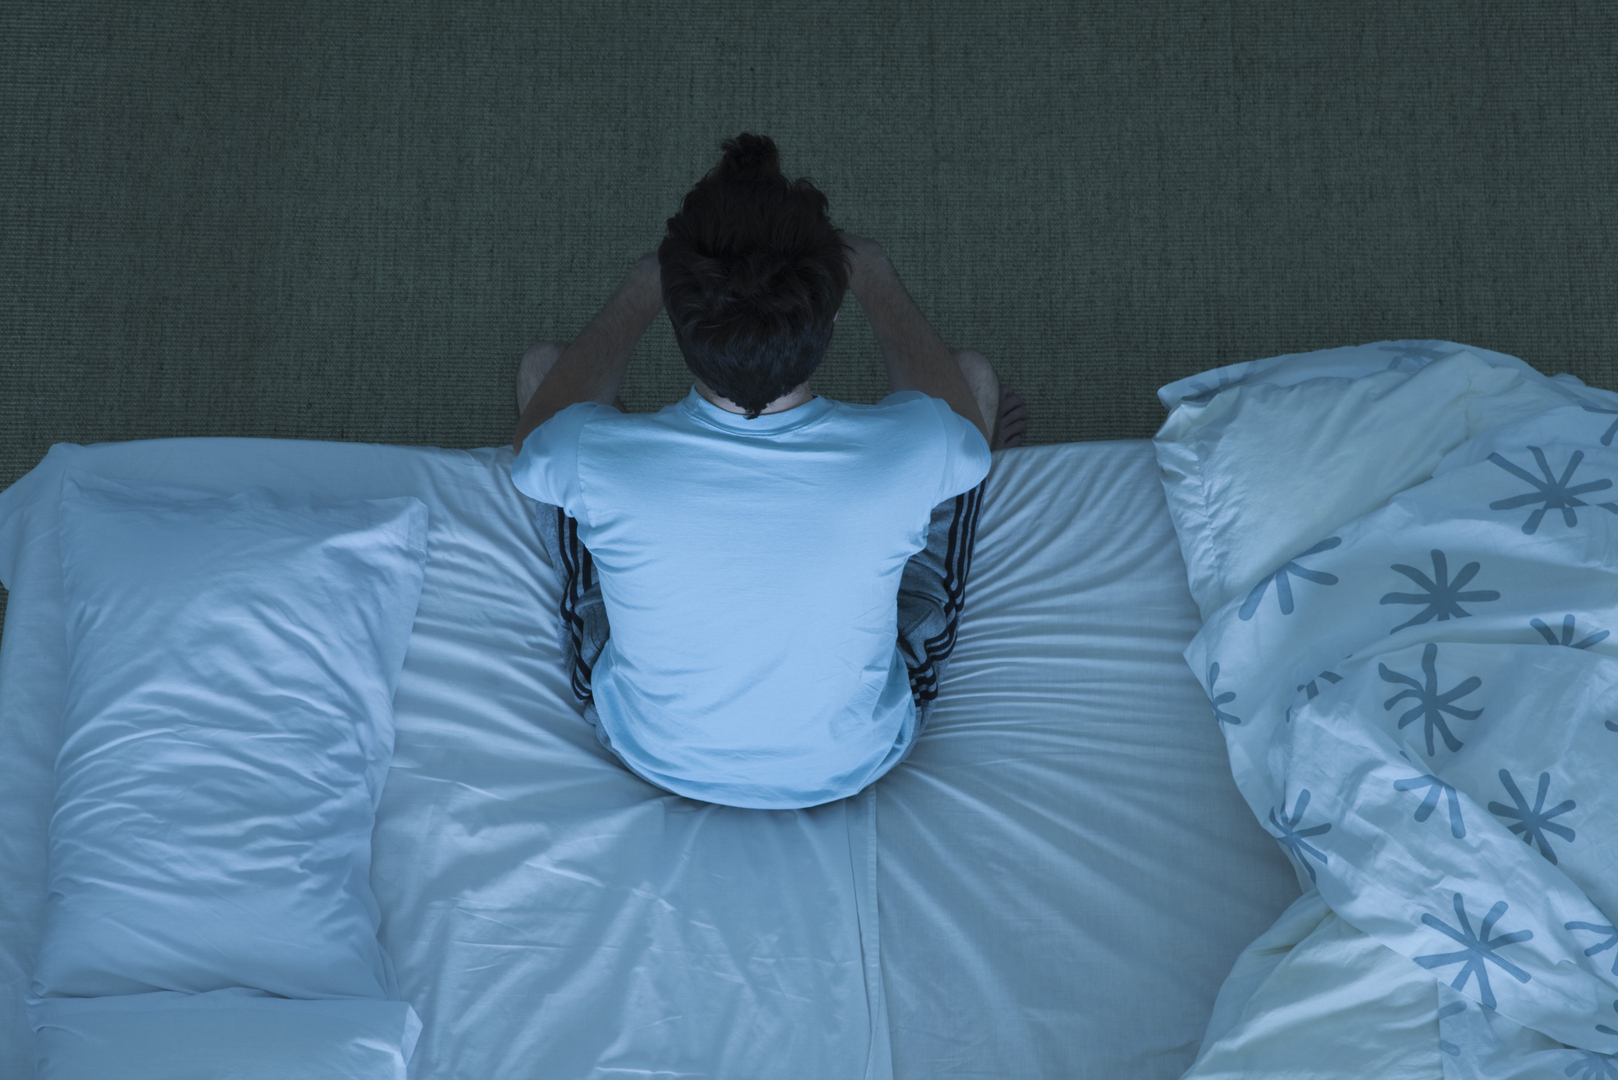 النوم السيء يضاعف ثلاث مرات من خطر الإصابة بالسبب الرئيسي للوفاة في العالم